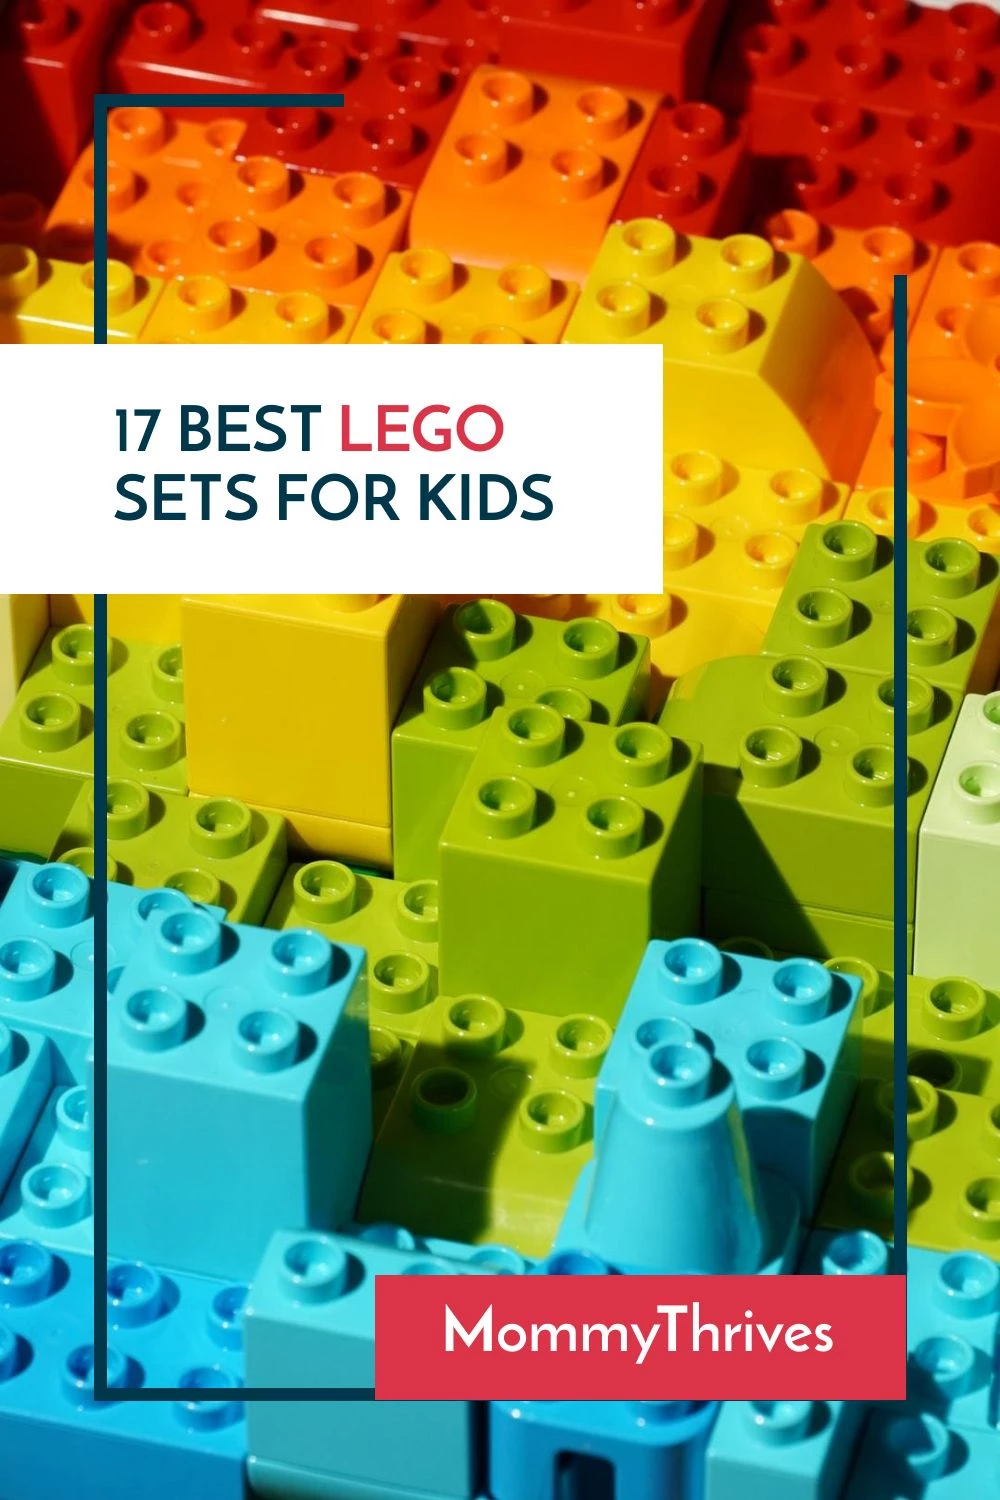 Best Building Sets For Kids - Popular Lego Sets For Kids - Quiet Toys For Kids